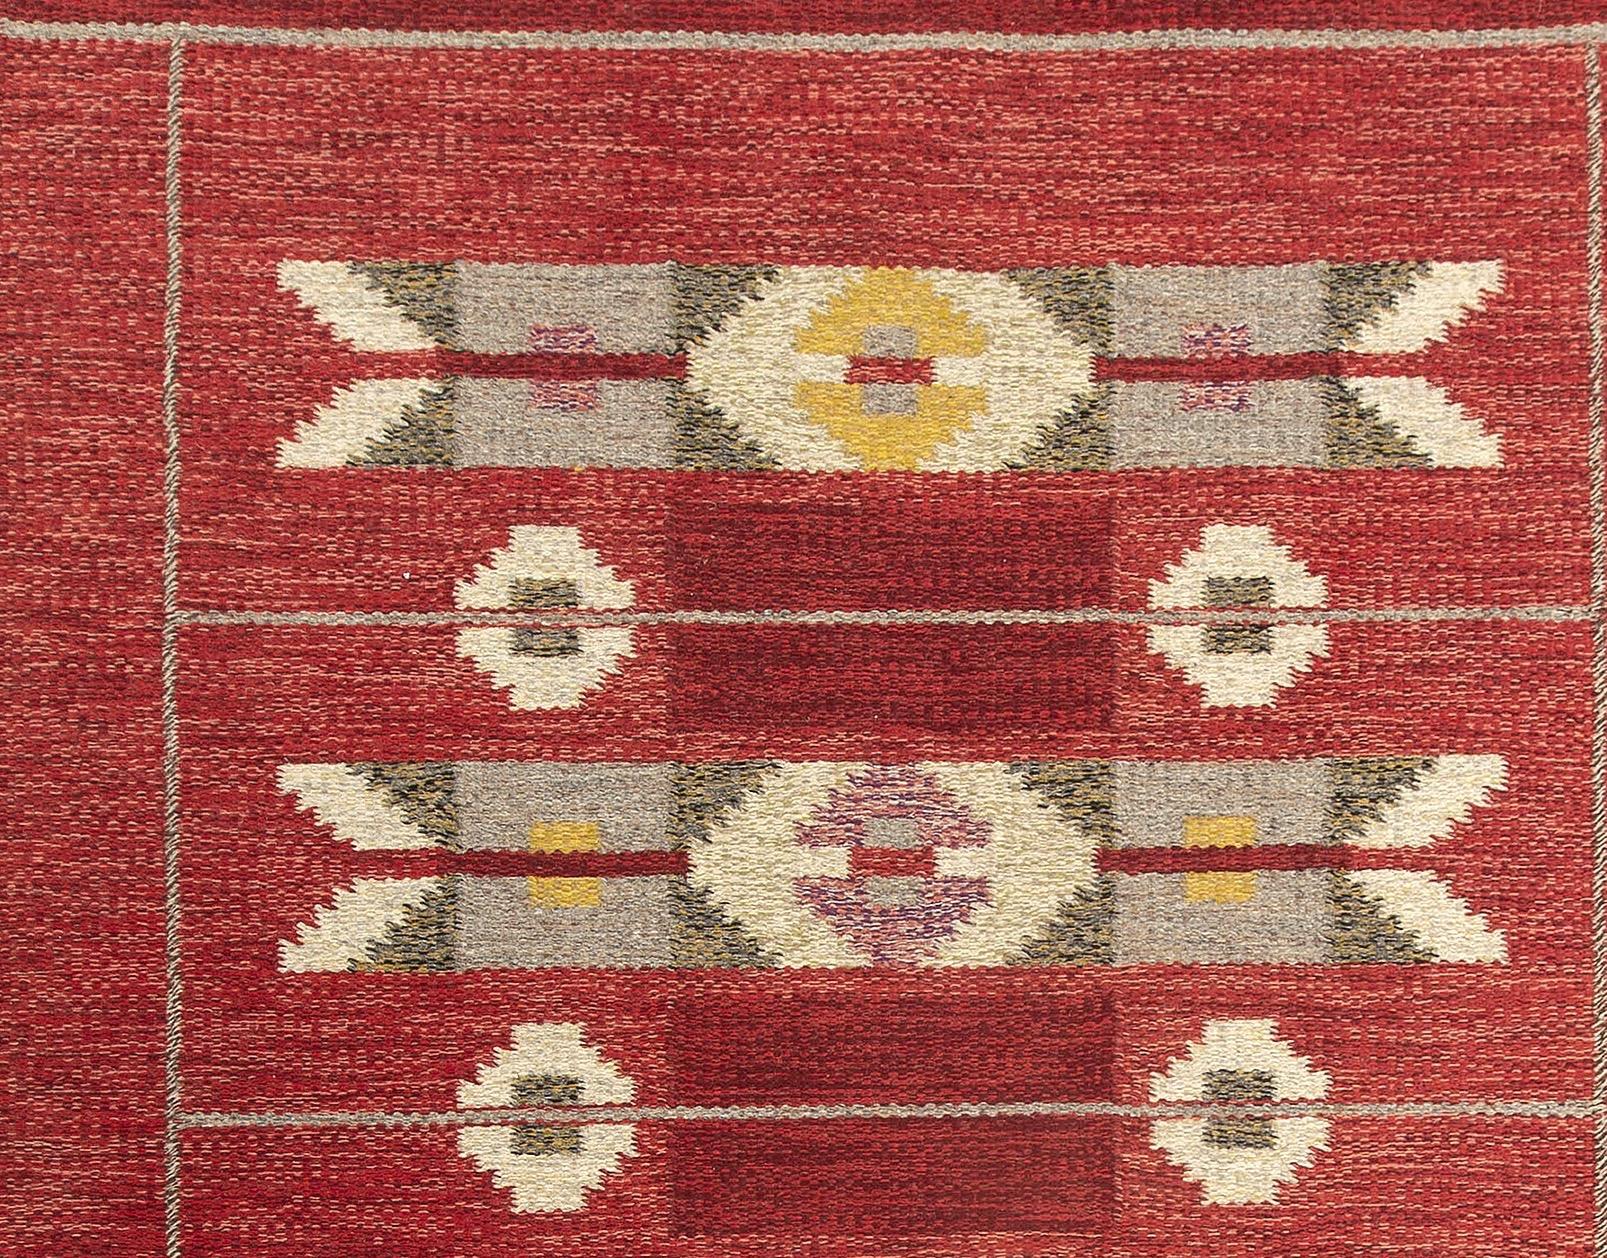 Swedish Scandinavian Modern flat-weave rug, signed IS by Ingegerd Silow